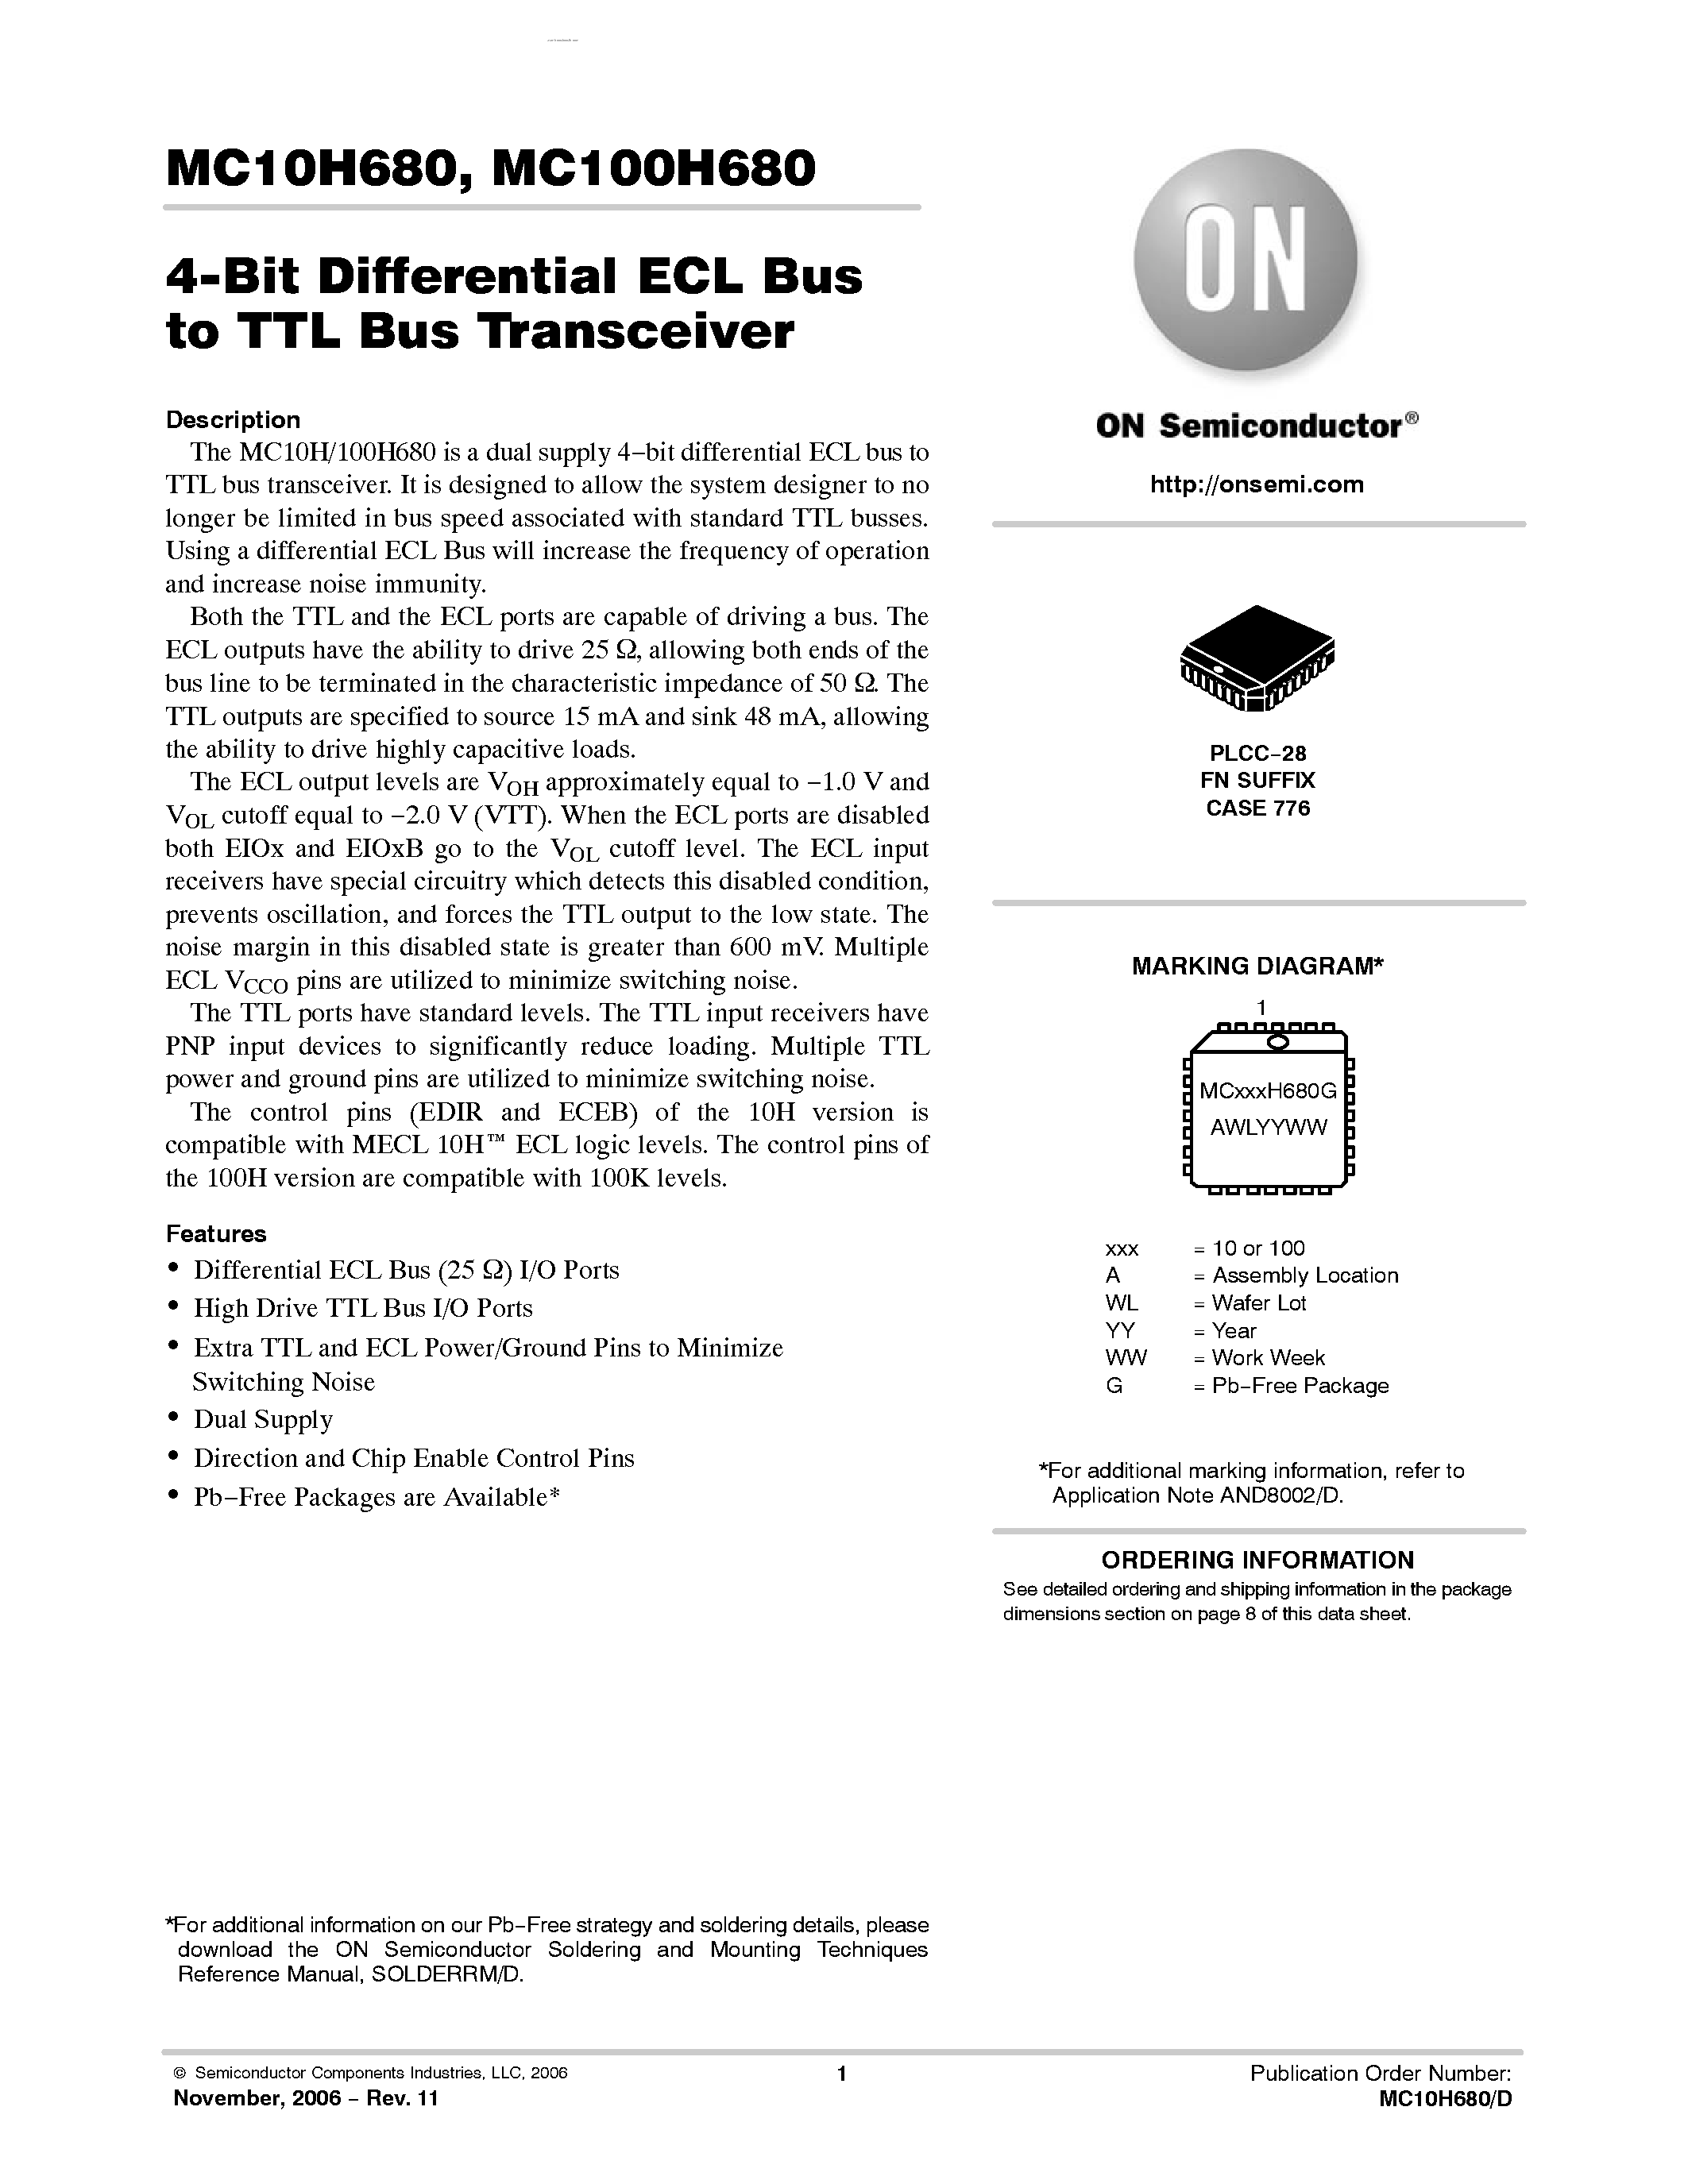 Datasheet MC10H680 - 4-Bit Differential ECL Bus/TTL Bus Transceciver page 1